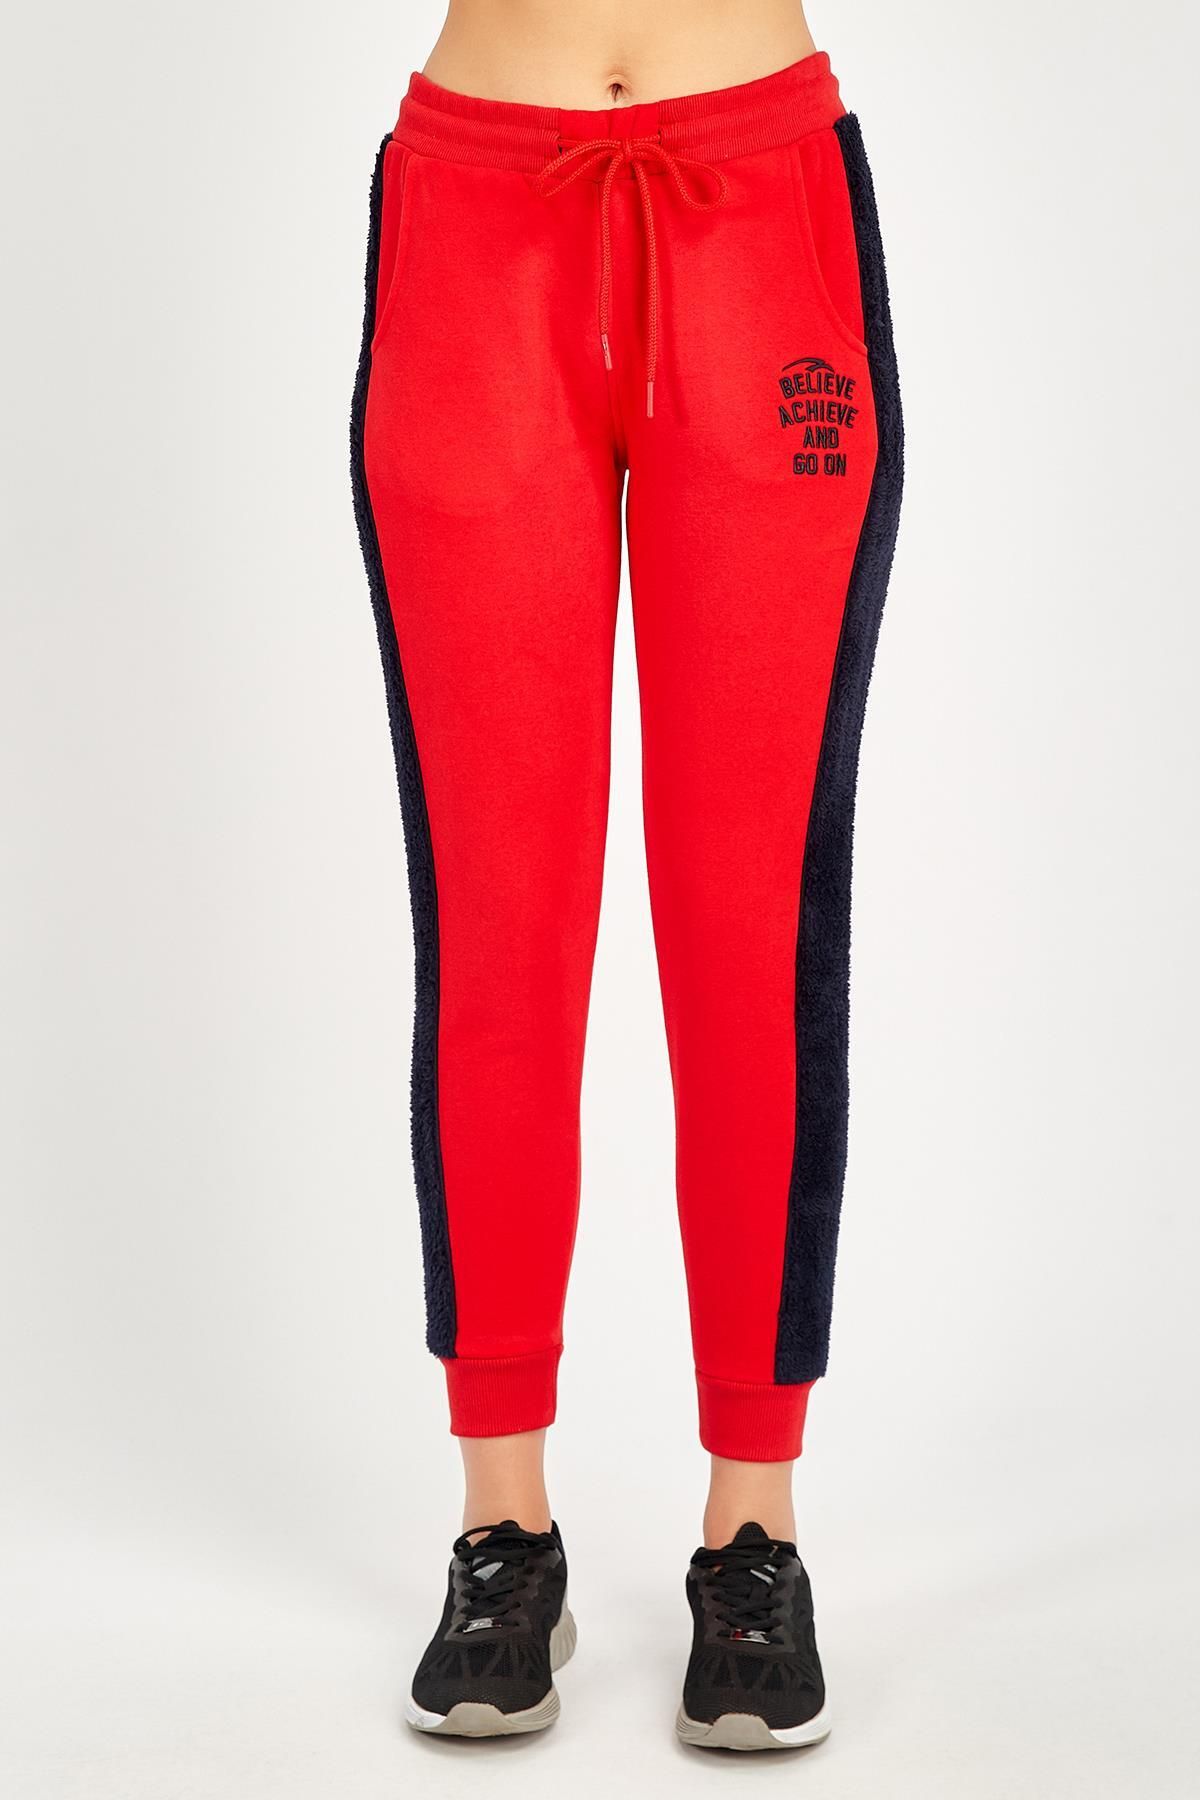 MARATON Sportswear Regular Kadın Basic Kırmızı Pantolon 18255